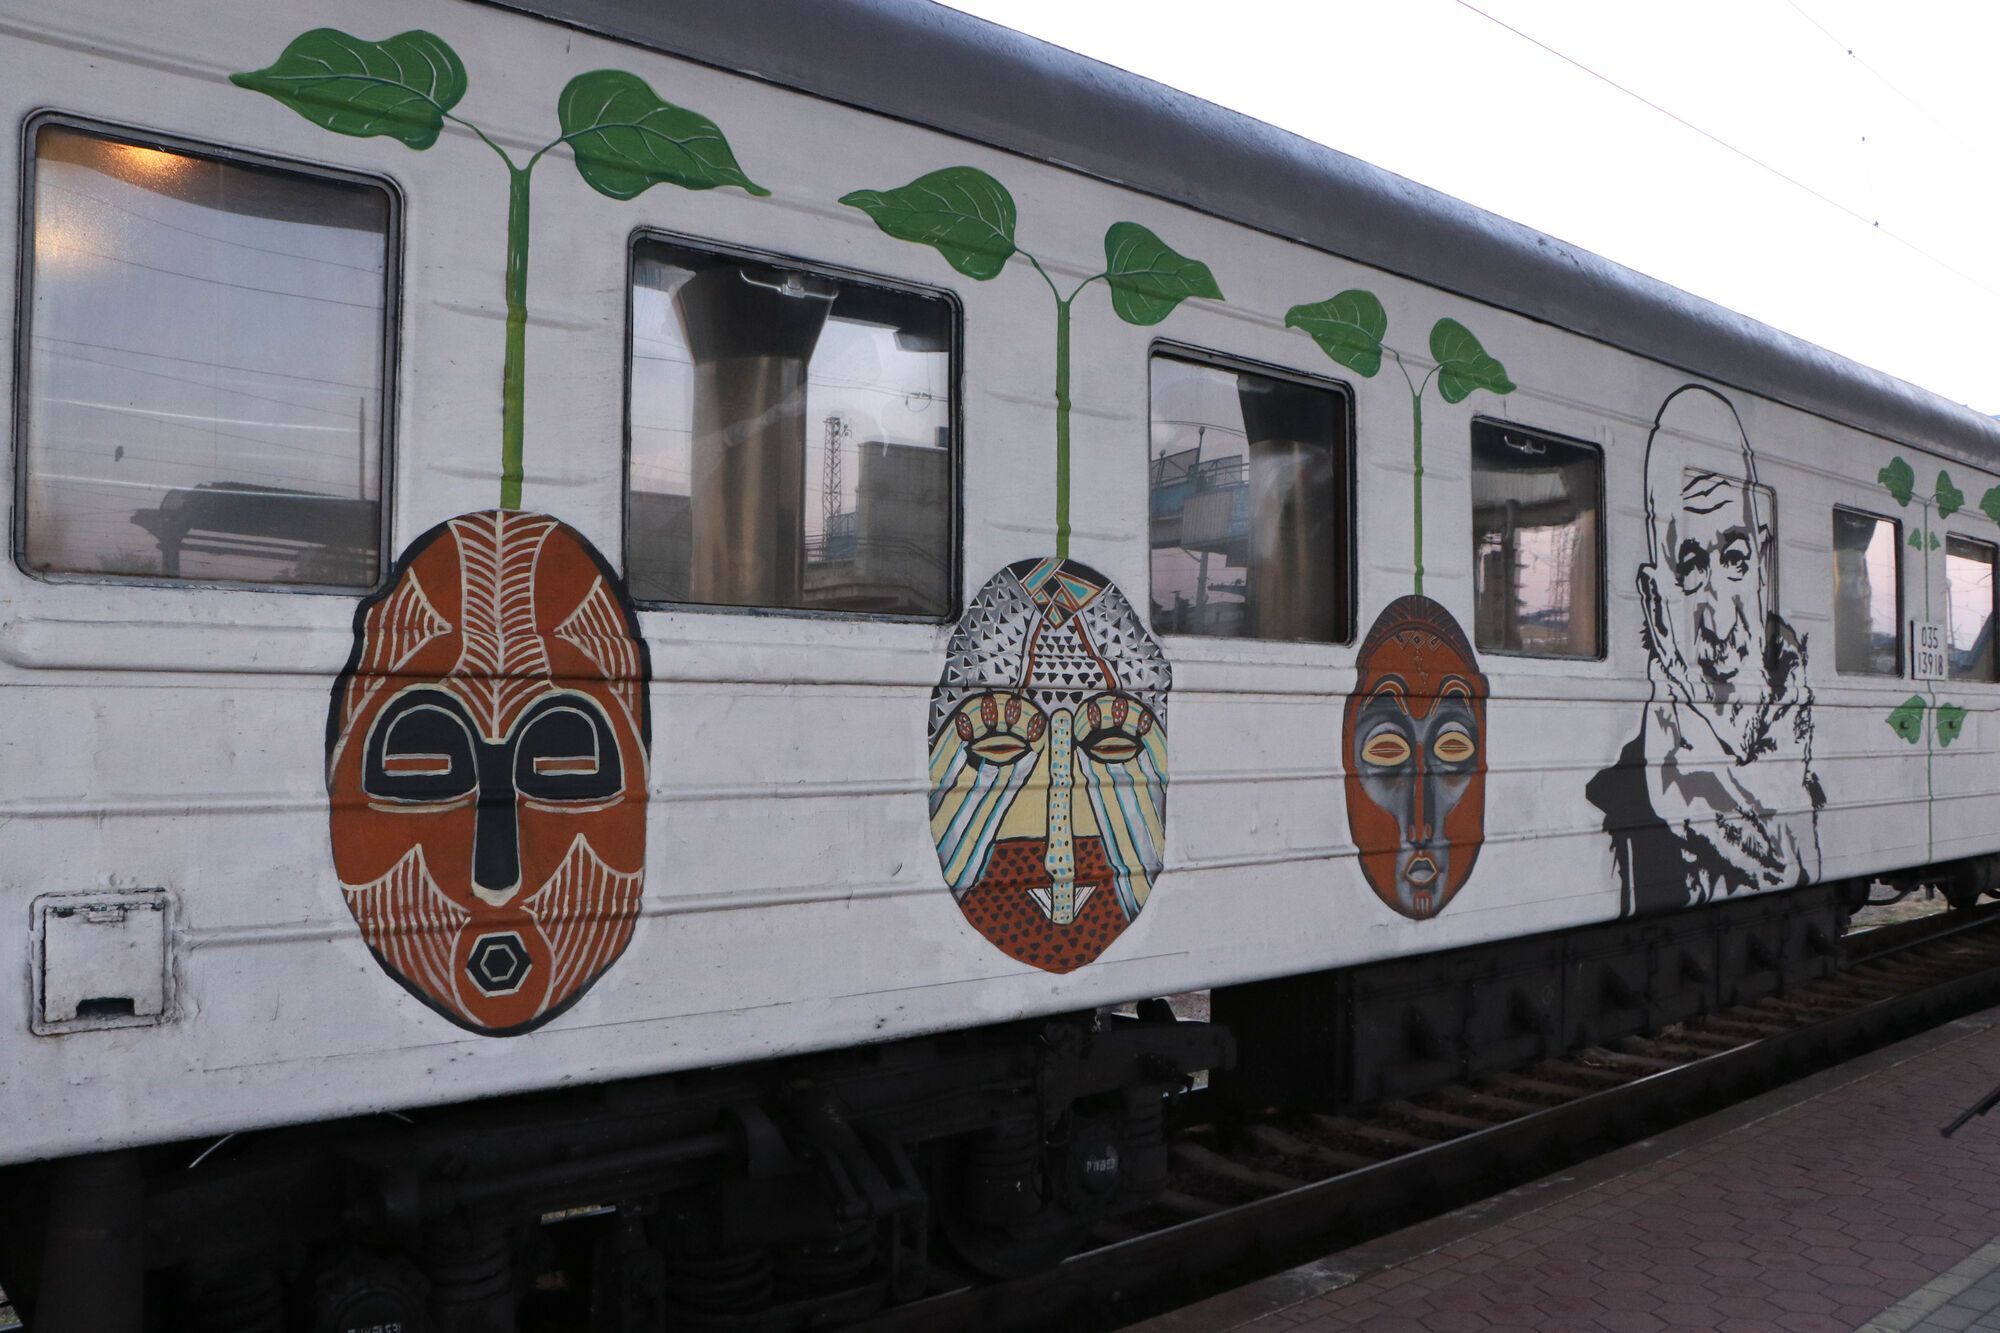 На одном из вагонов уникального поезда изображен недавно умерший художник Александр Ройтбурд